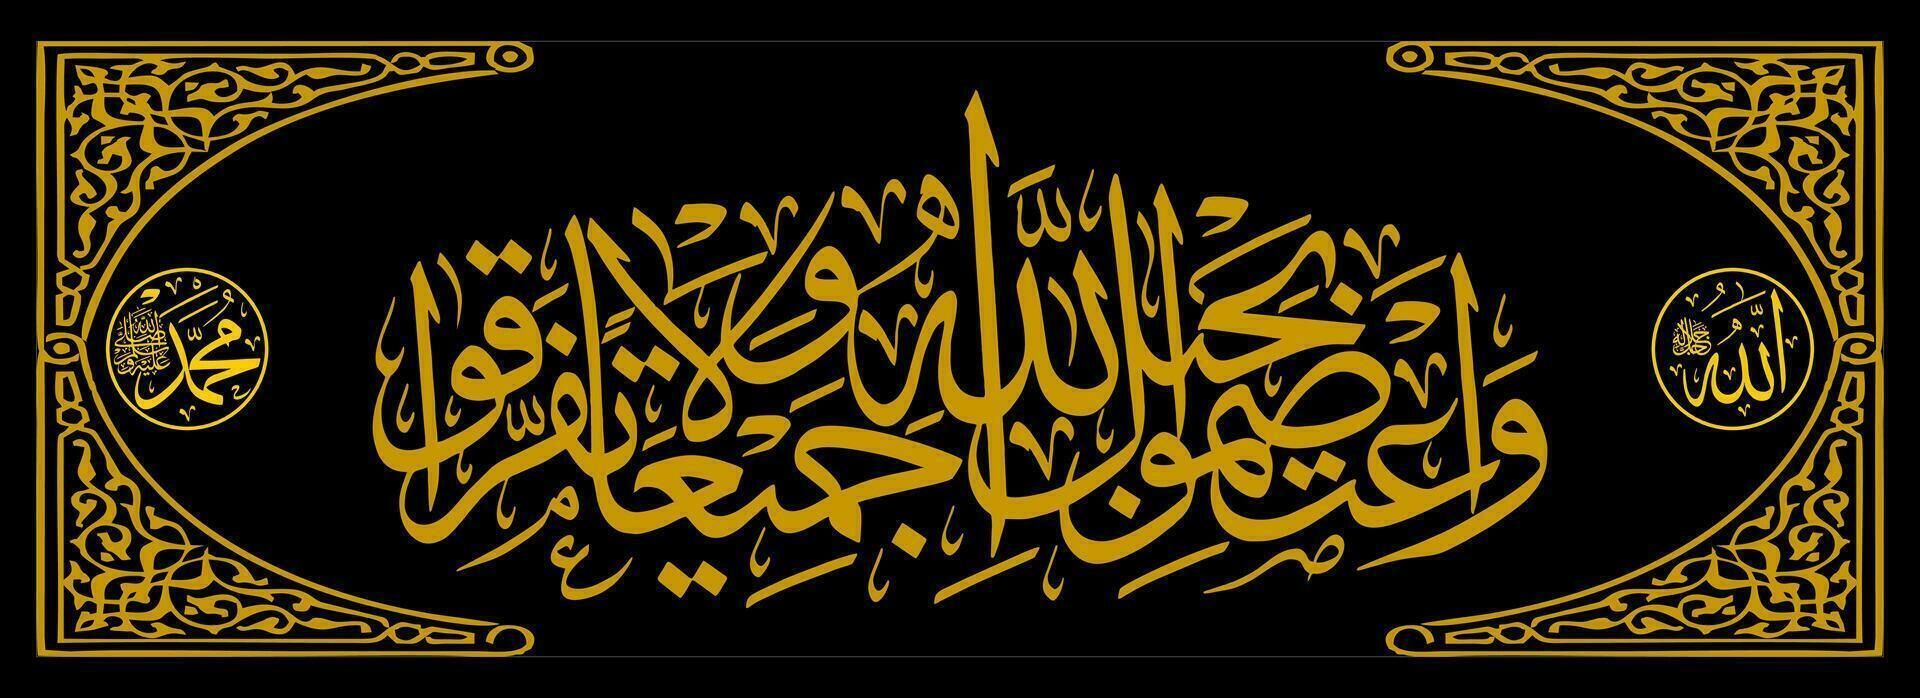 calligrafia thuluth al Corano al imran 103 quale si intende hold veloce tutti di voi con di Allah corda e non fare ottenere separato vettore